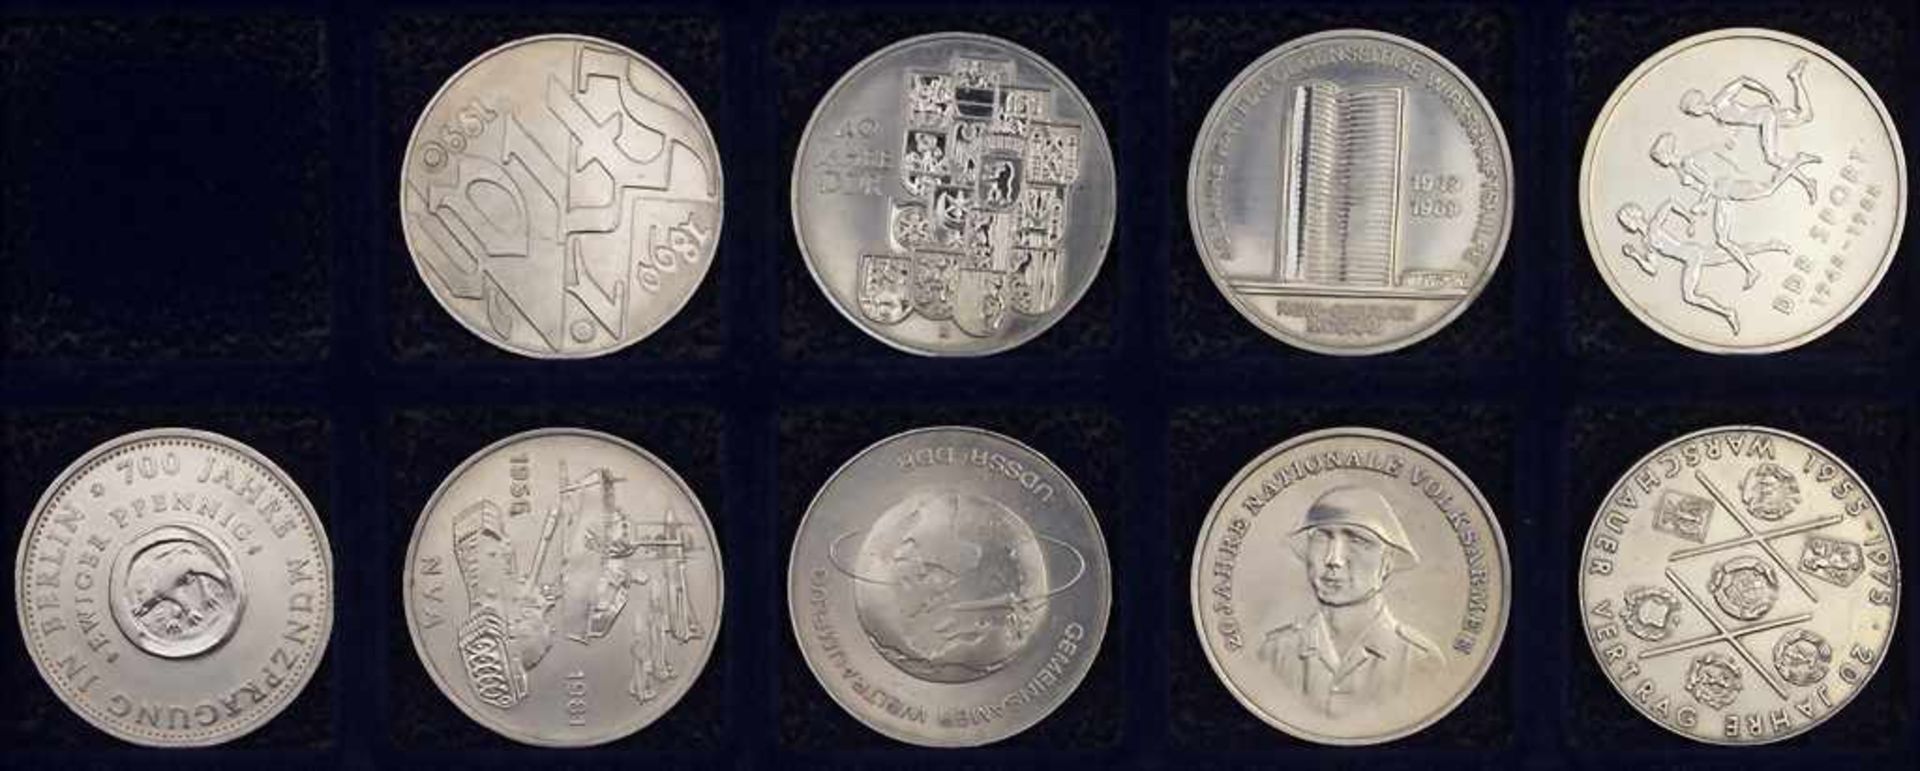 Komplette Sammlung Gedenkmünzen der DDR / Collection commemorative coins of the GDR* 5 Mark: - Bild 3 aus 22